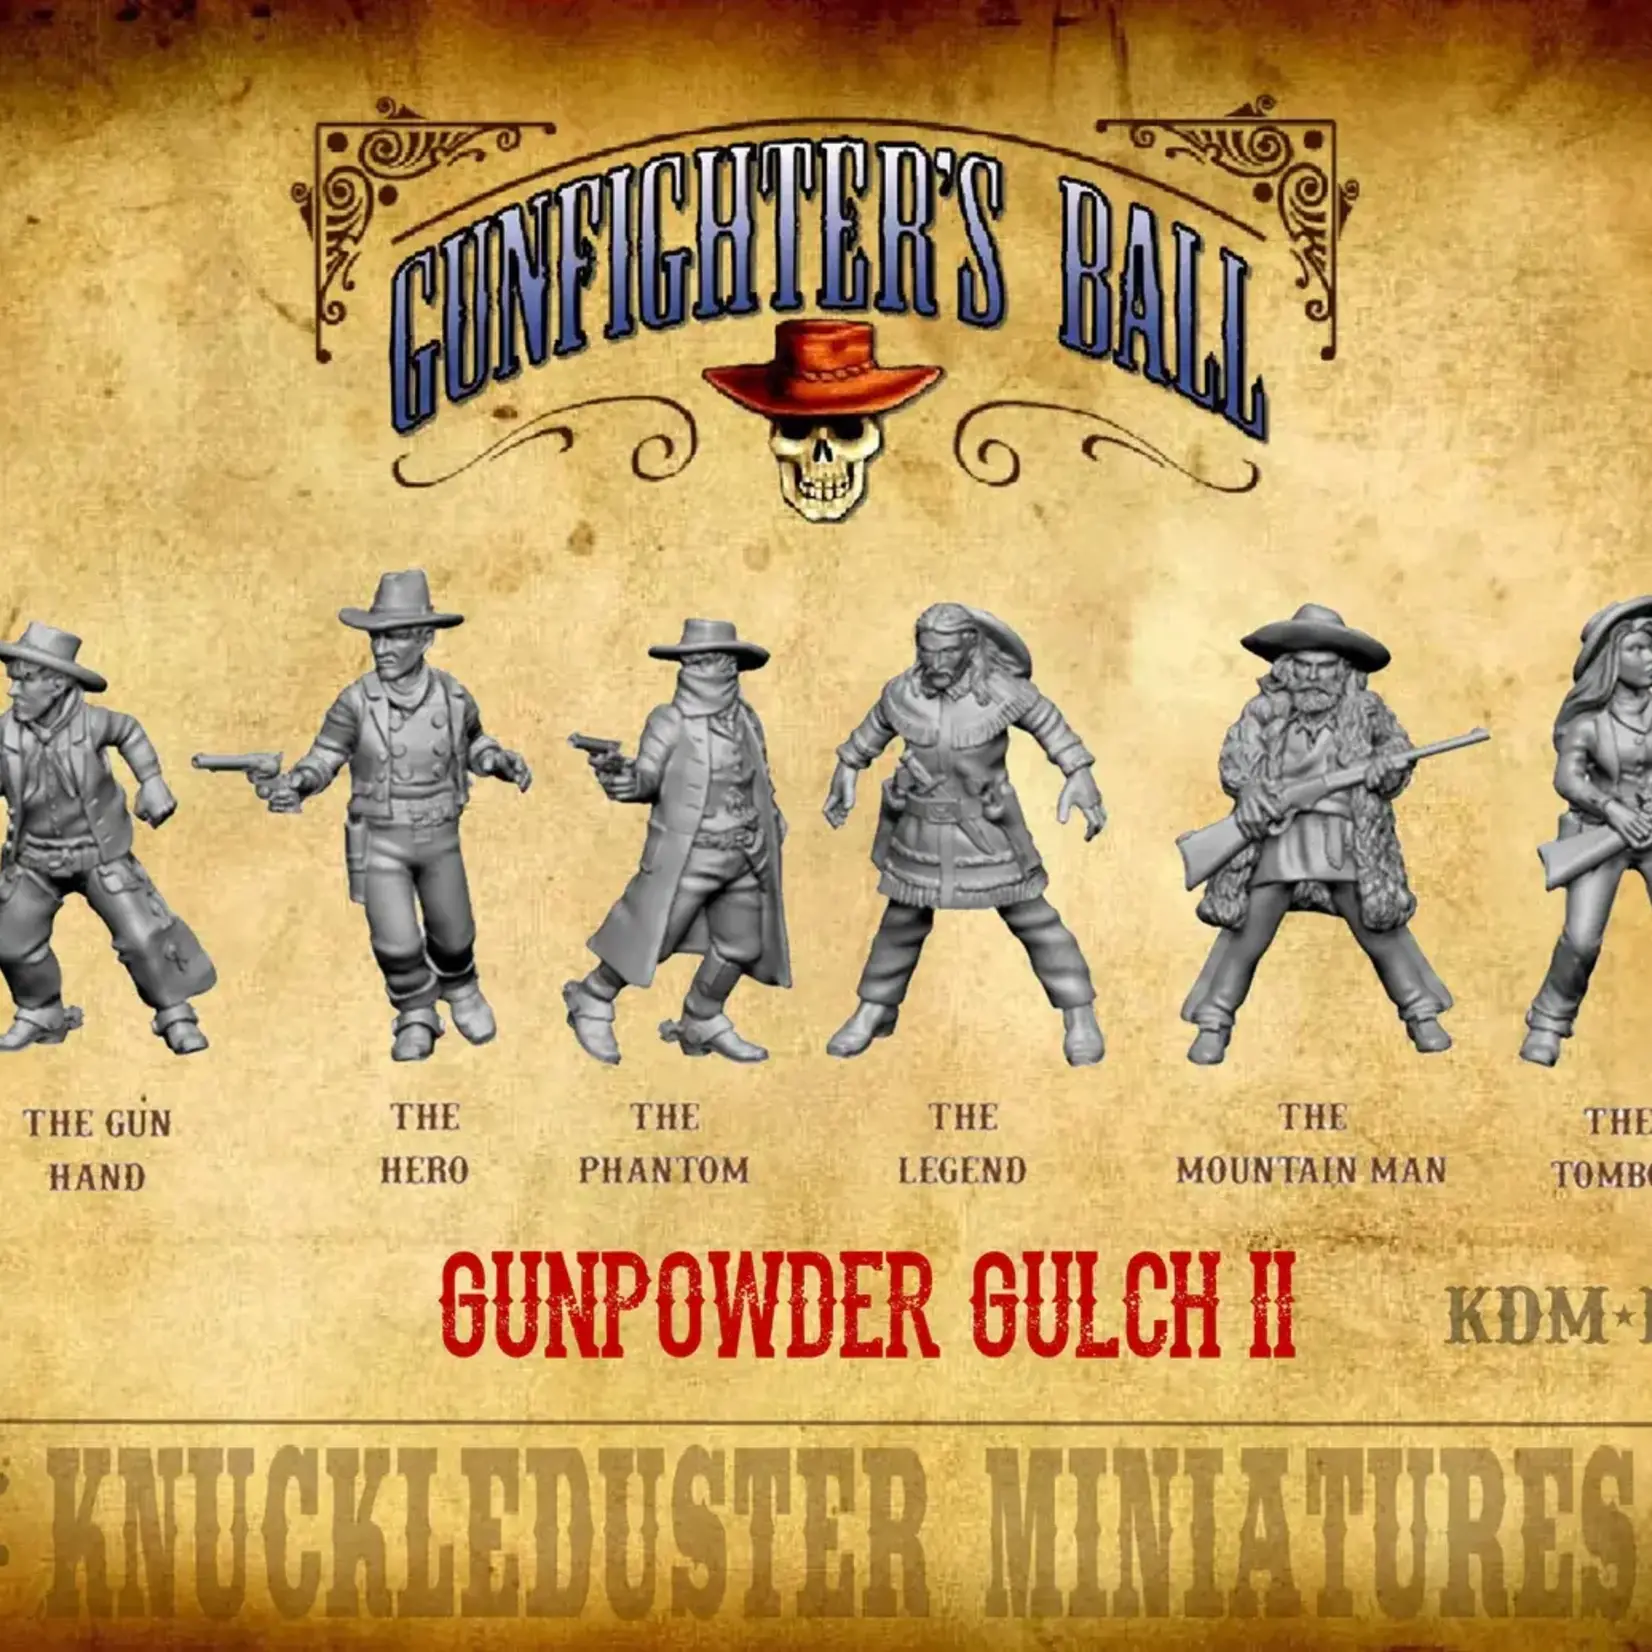 Knuckleduster Miniatures Gunpowder Gulch II